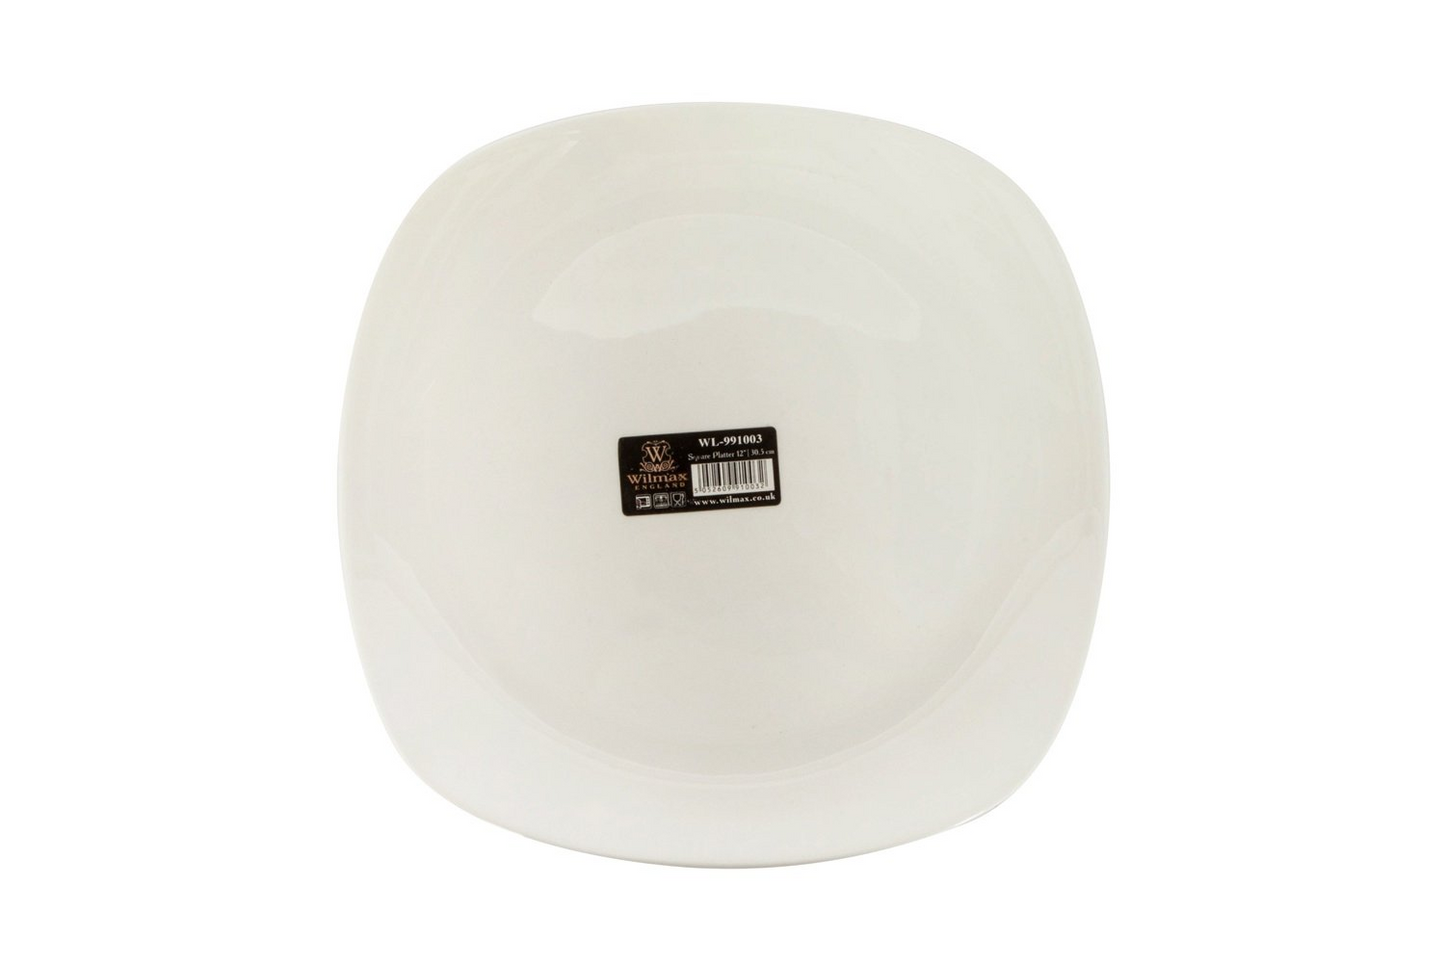 Wilmax [A] Fine Porcelain Square Platter 11.5" X 11.5" | 29.5 X 29.5 Cm WL-991003/A